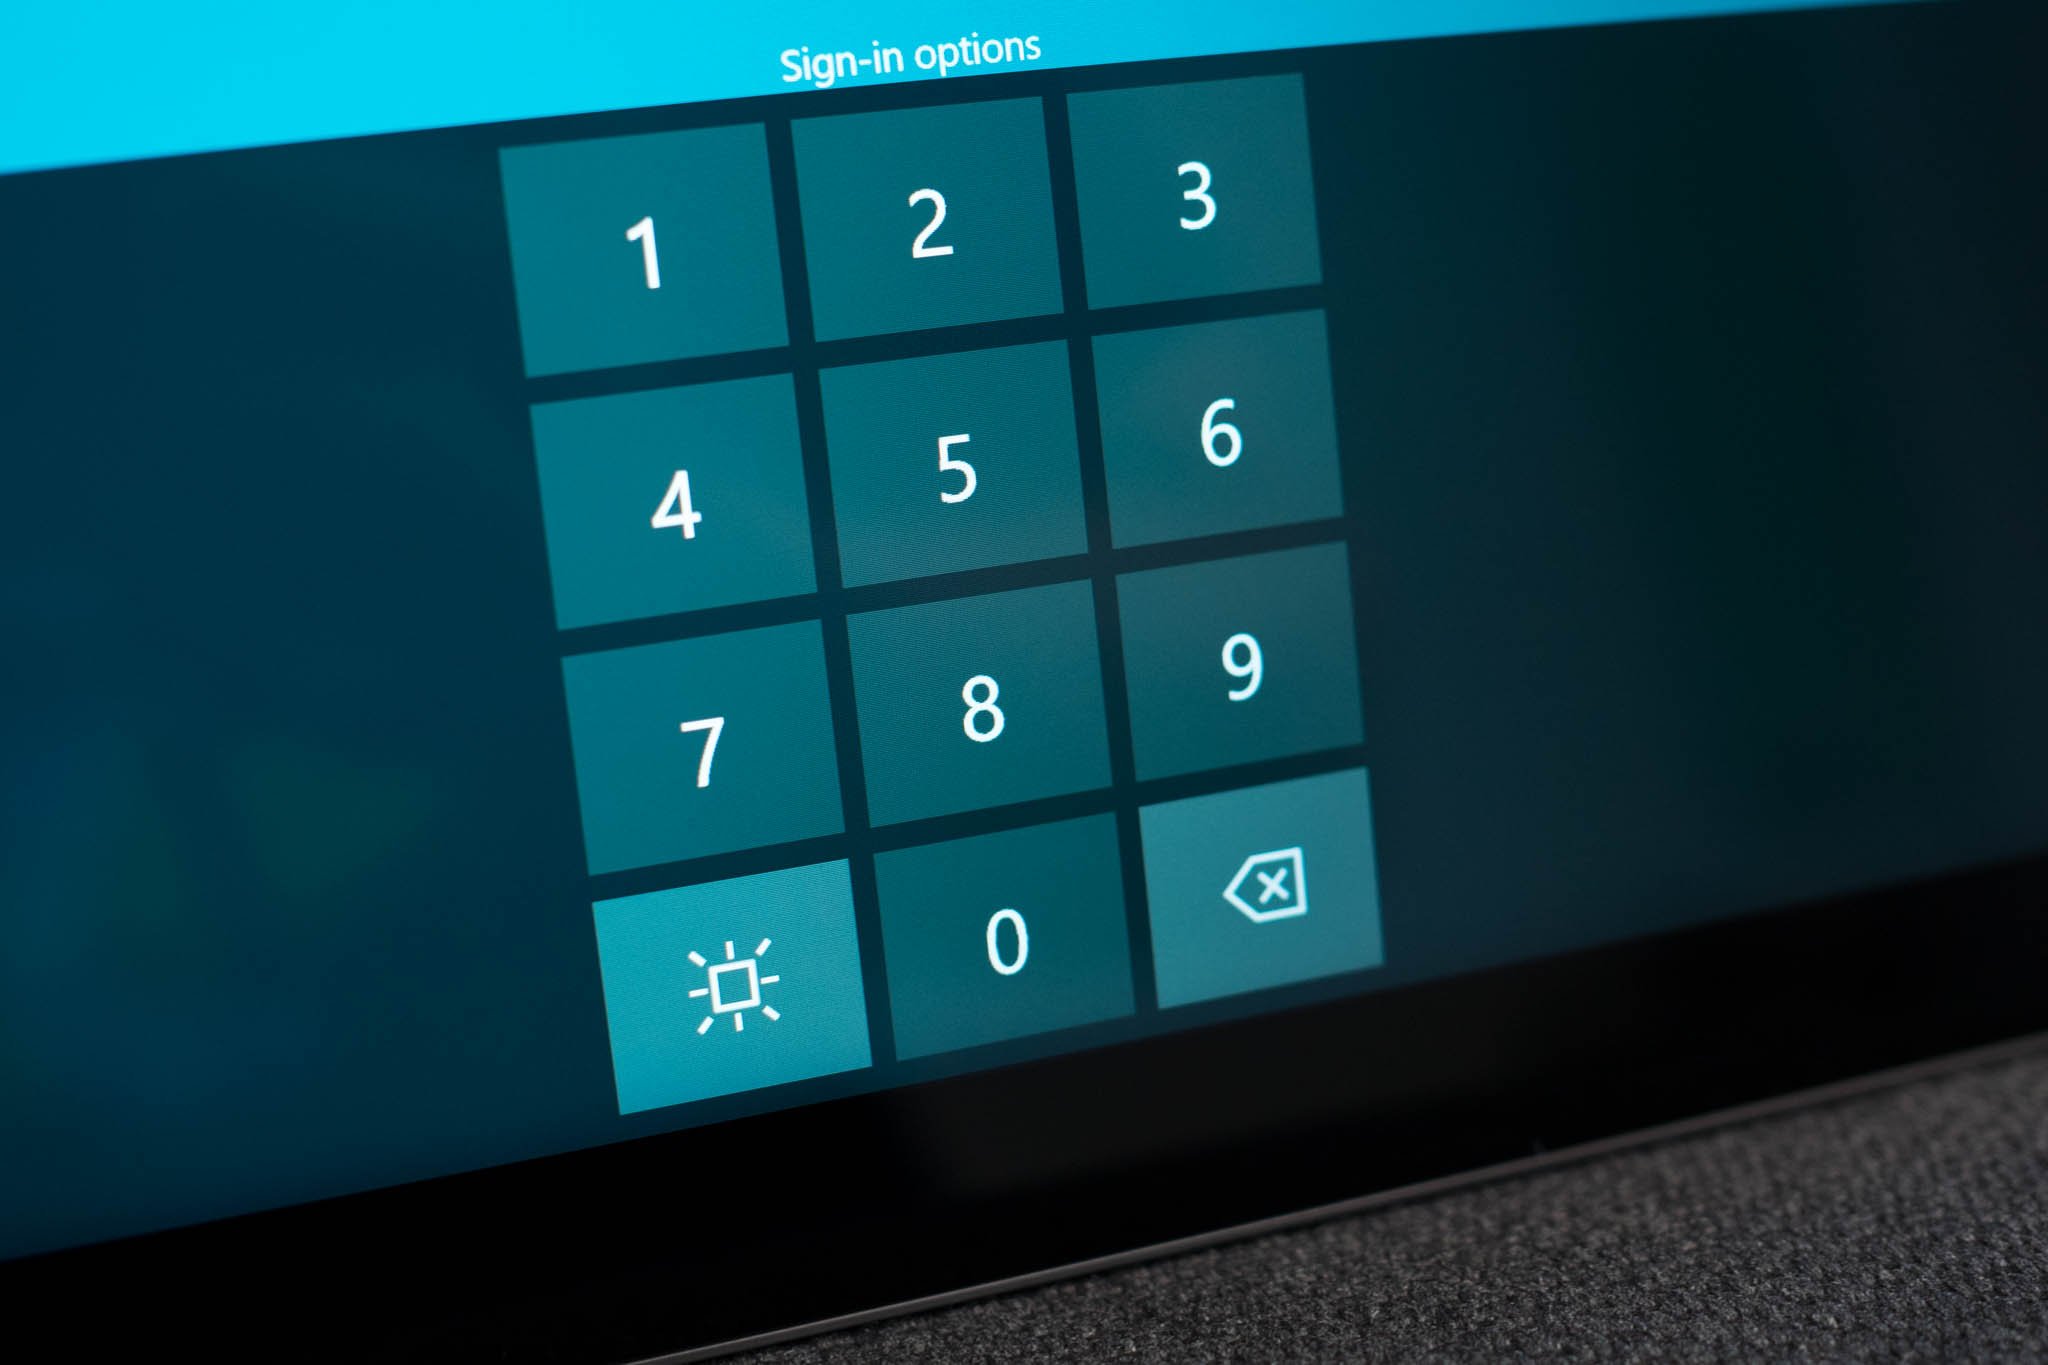 virtual keyboard windows 10 login screen